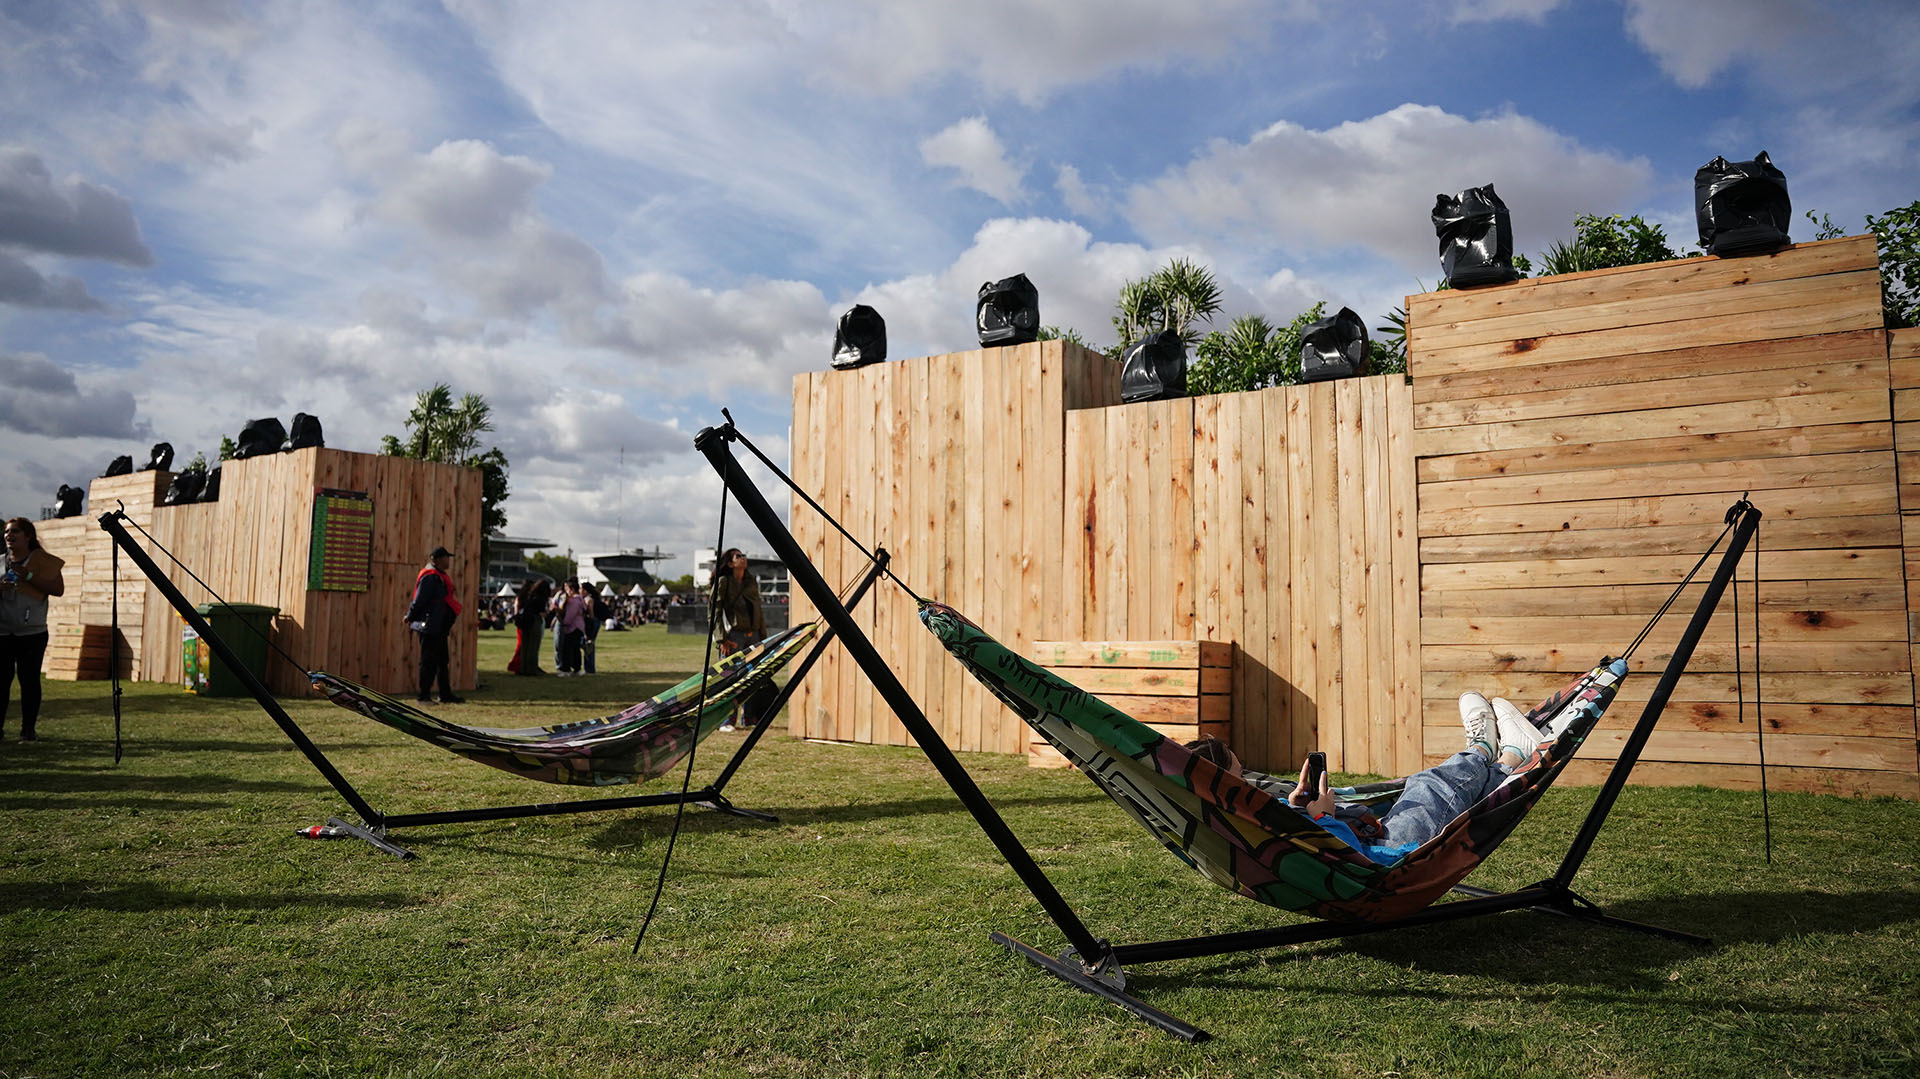 Lugar de descanso al aire libre: hamacas paraguayas al estilo camping complementaron los espacios verdes que disfrutaron en el Lollapalooza